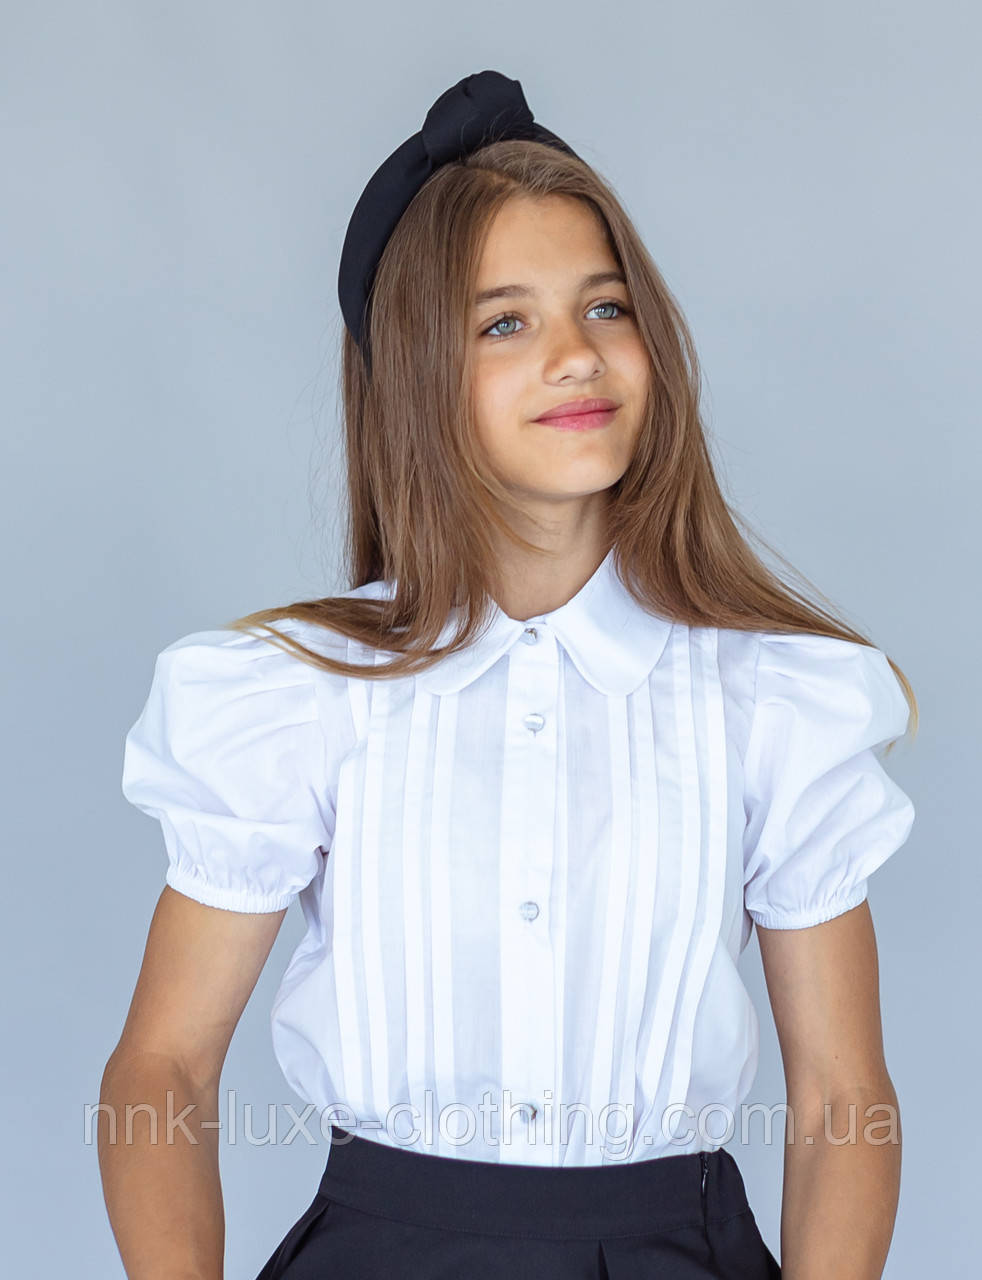 Сорочка блуза дитяча підліткова бавовняна ошатна з коротким рукавом - ліхтариком, для дівчинки, Біла